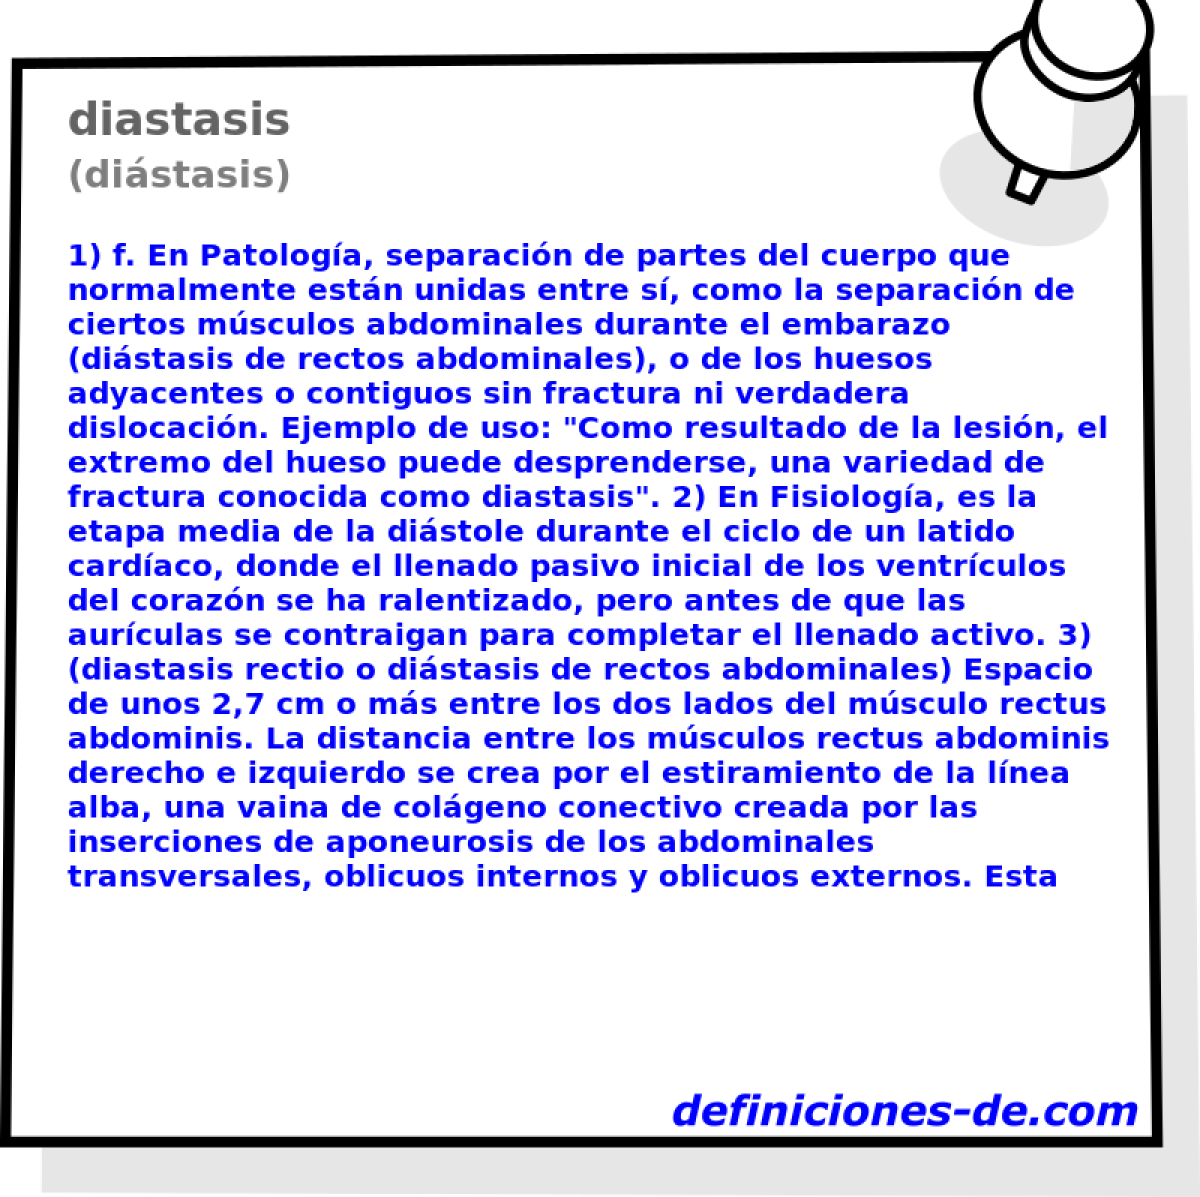 diastasis (distasis)